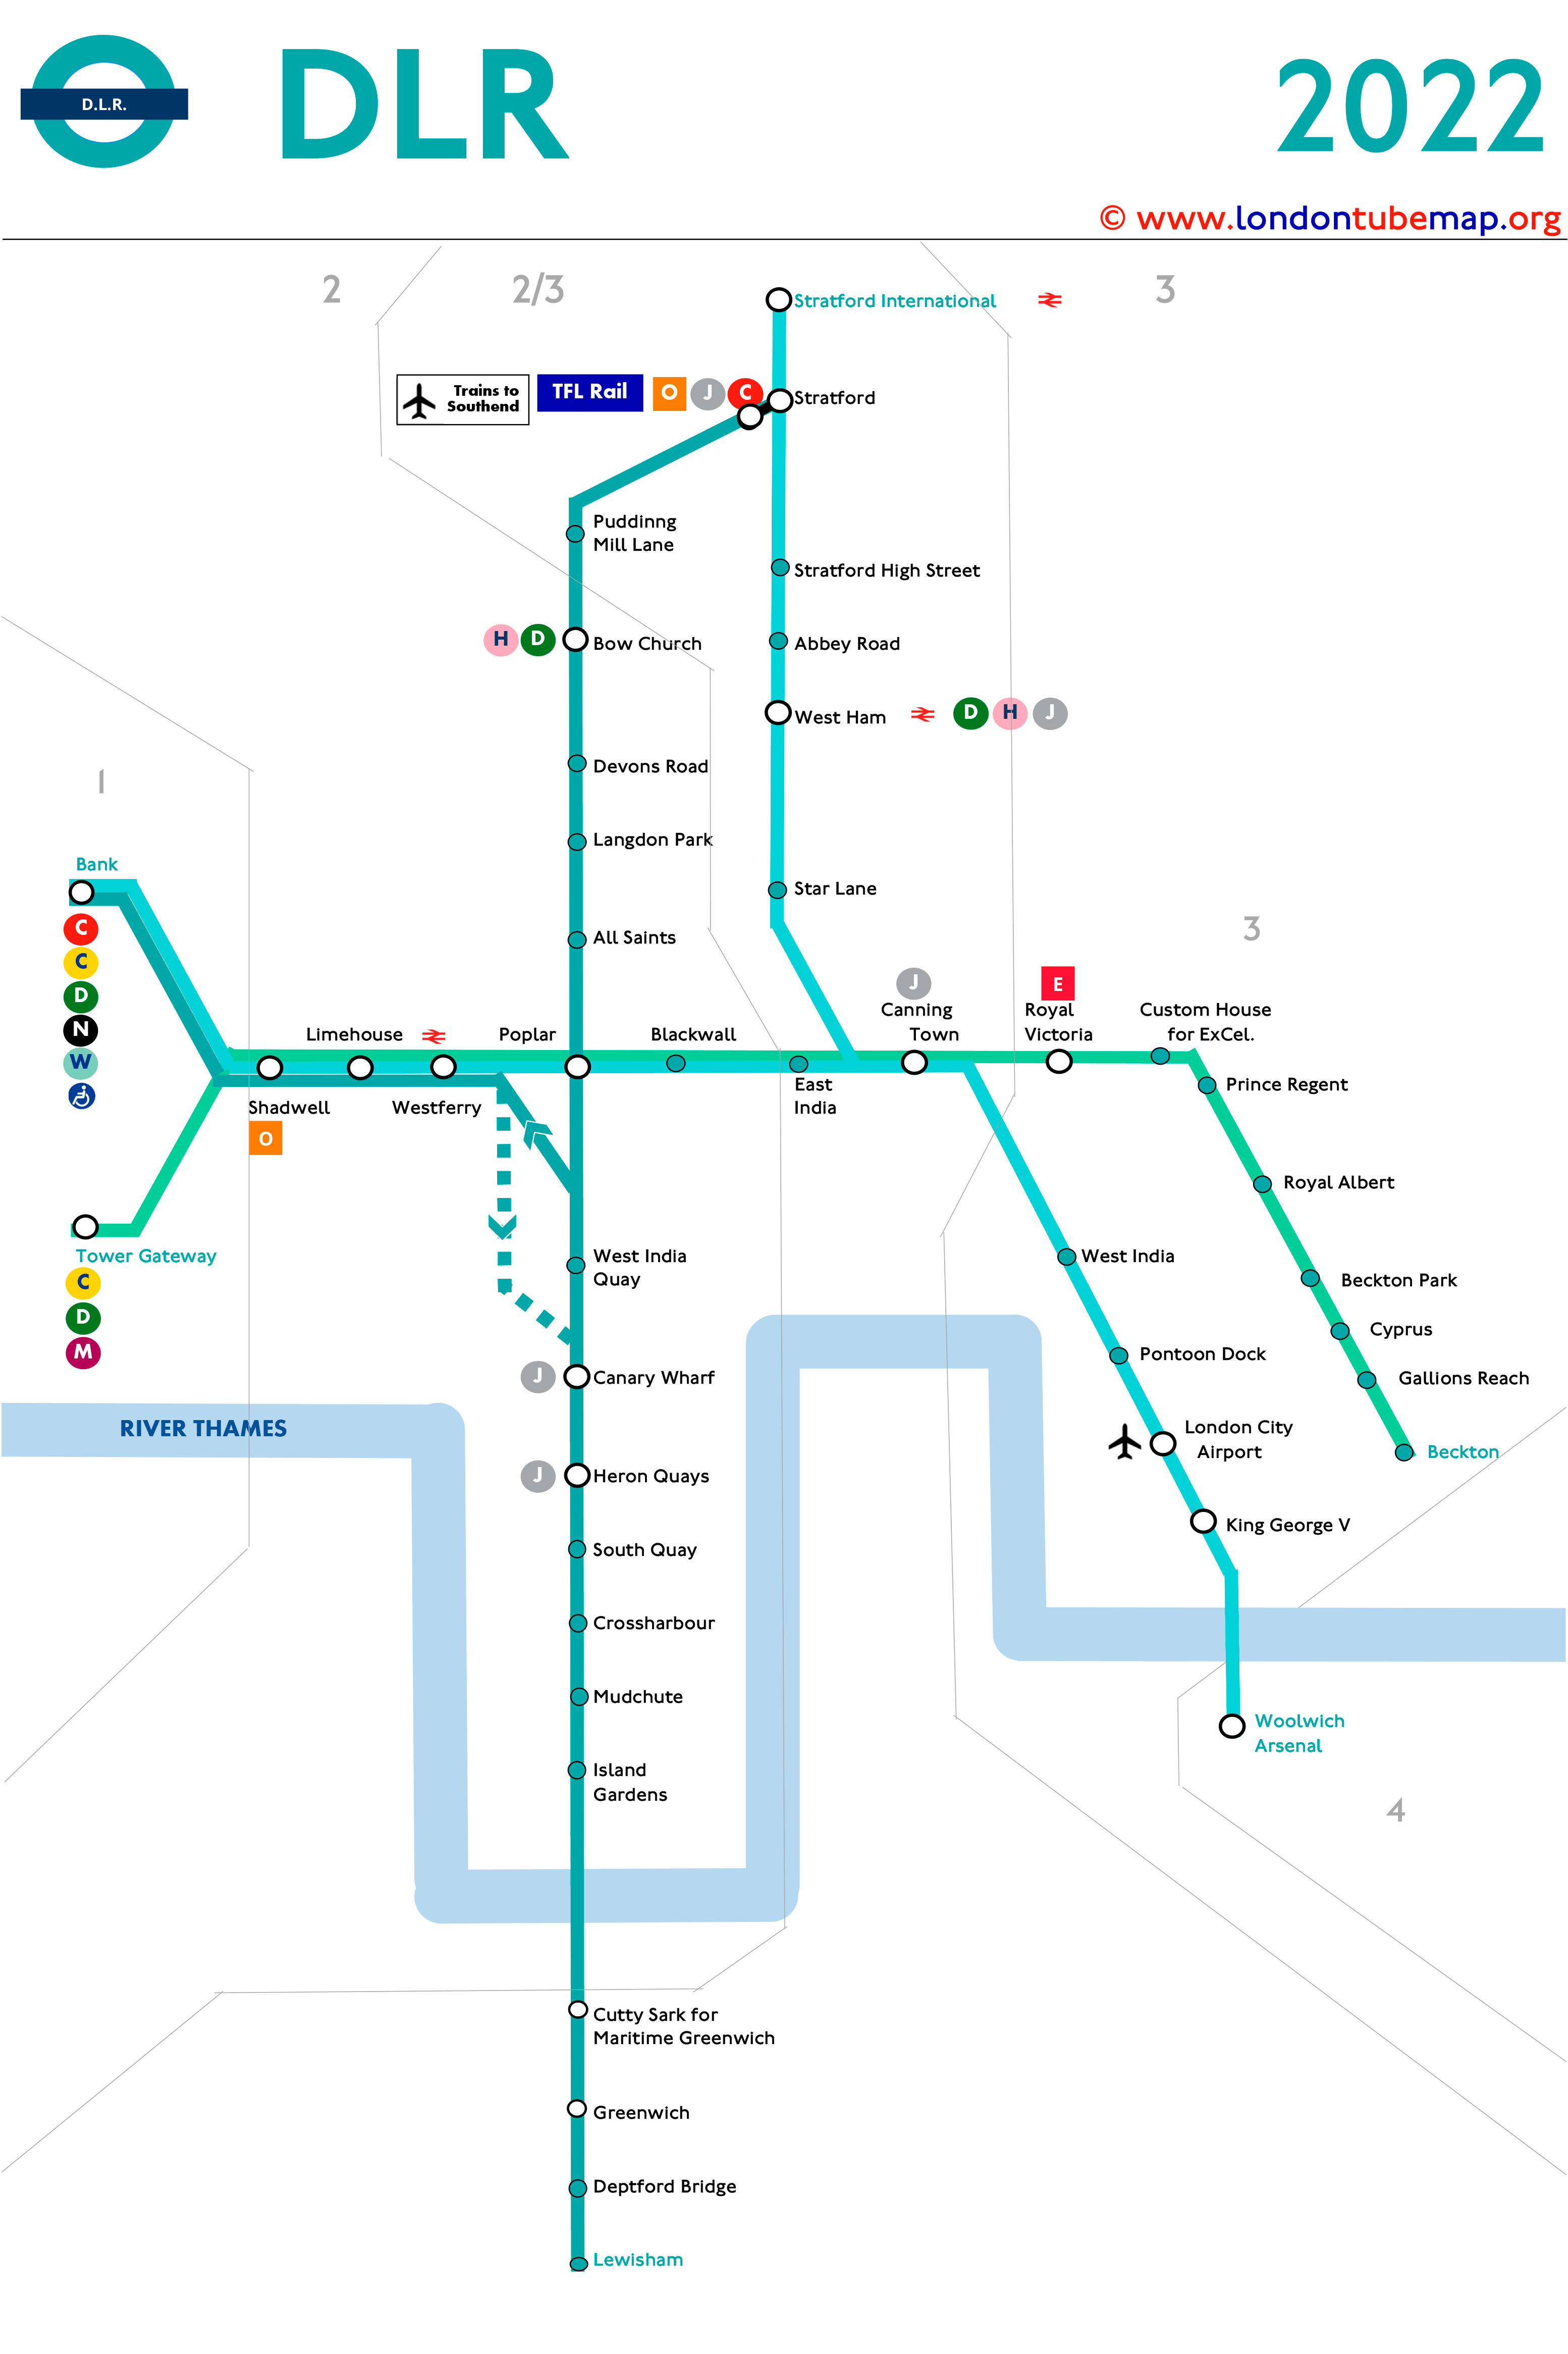 DLR Map 2022 V2 